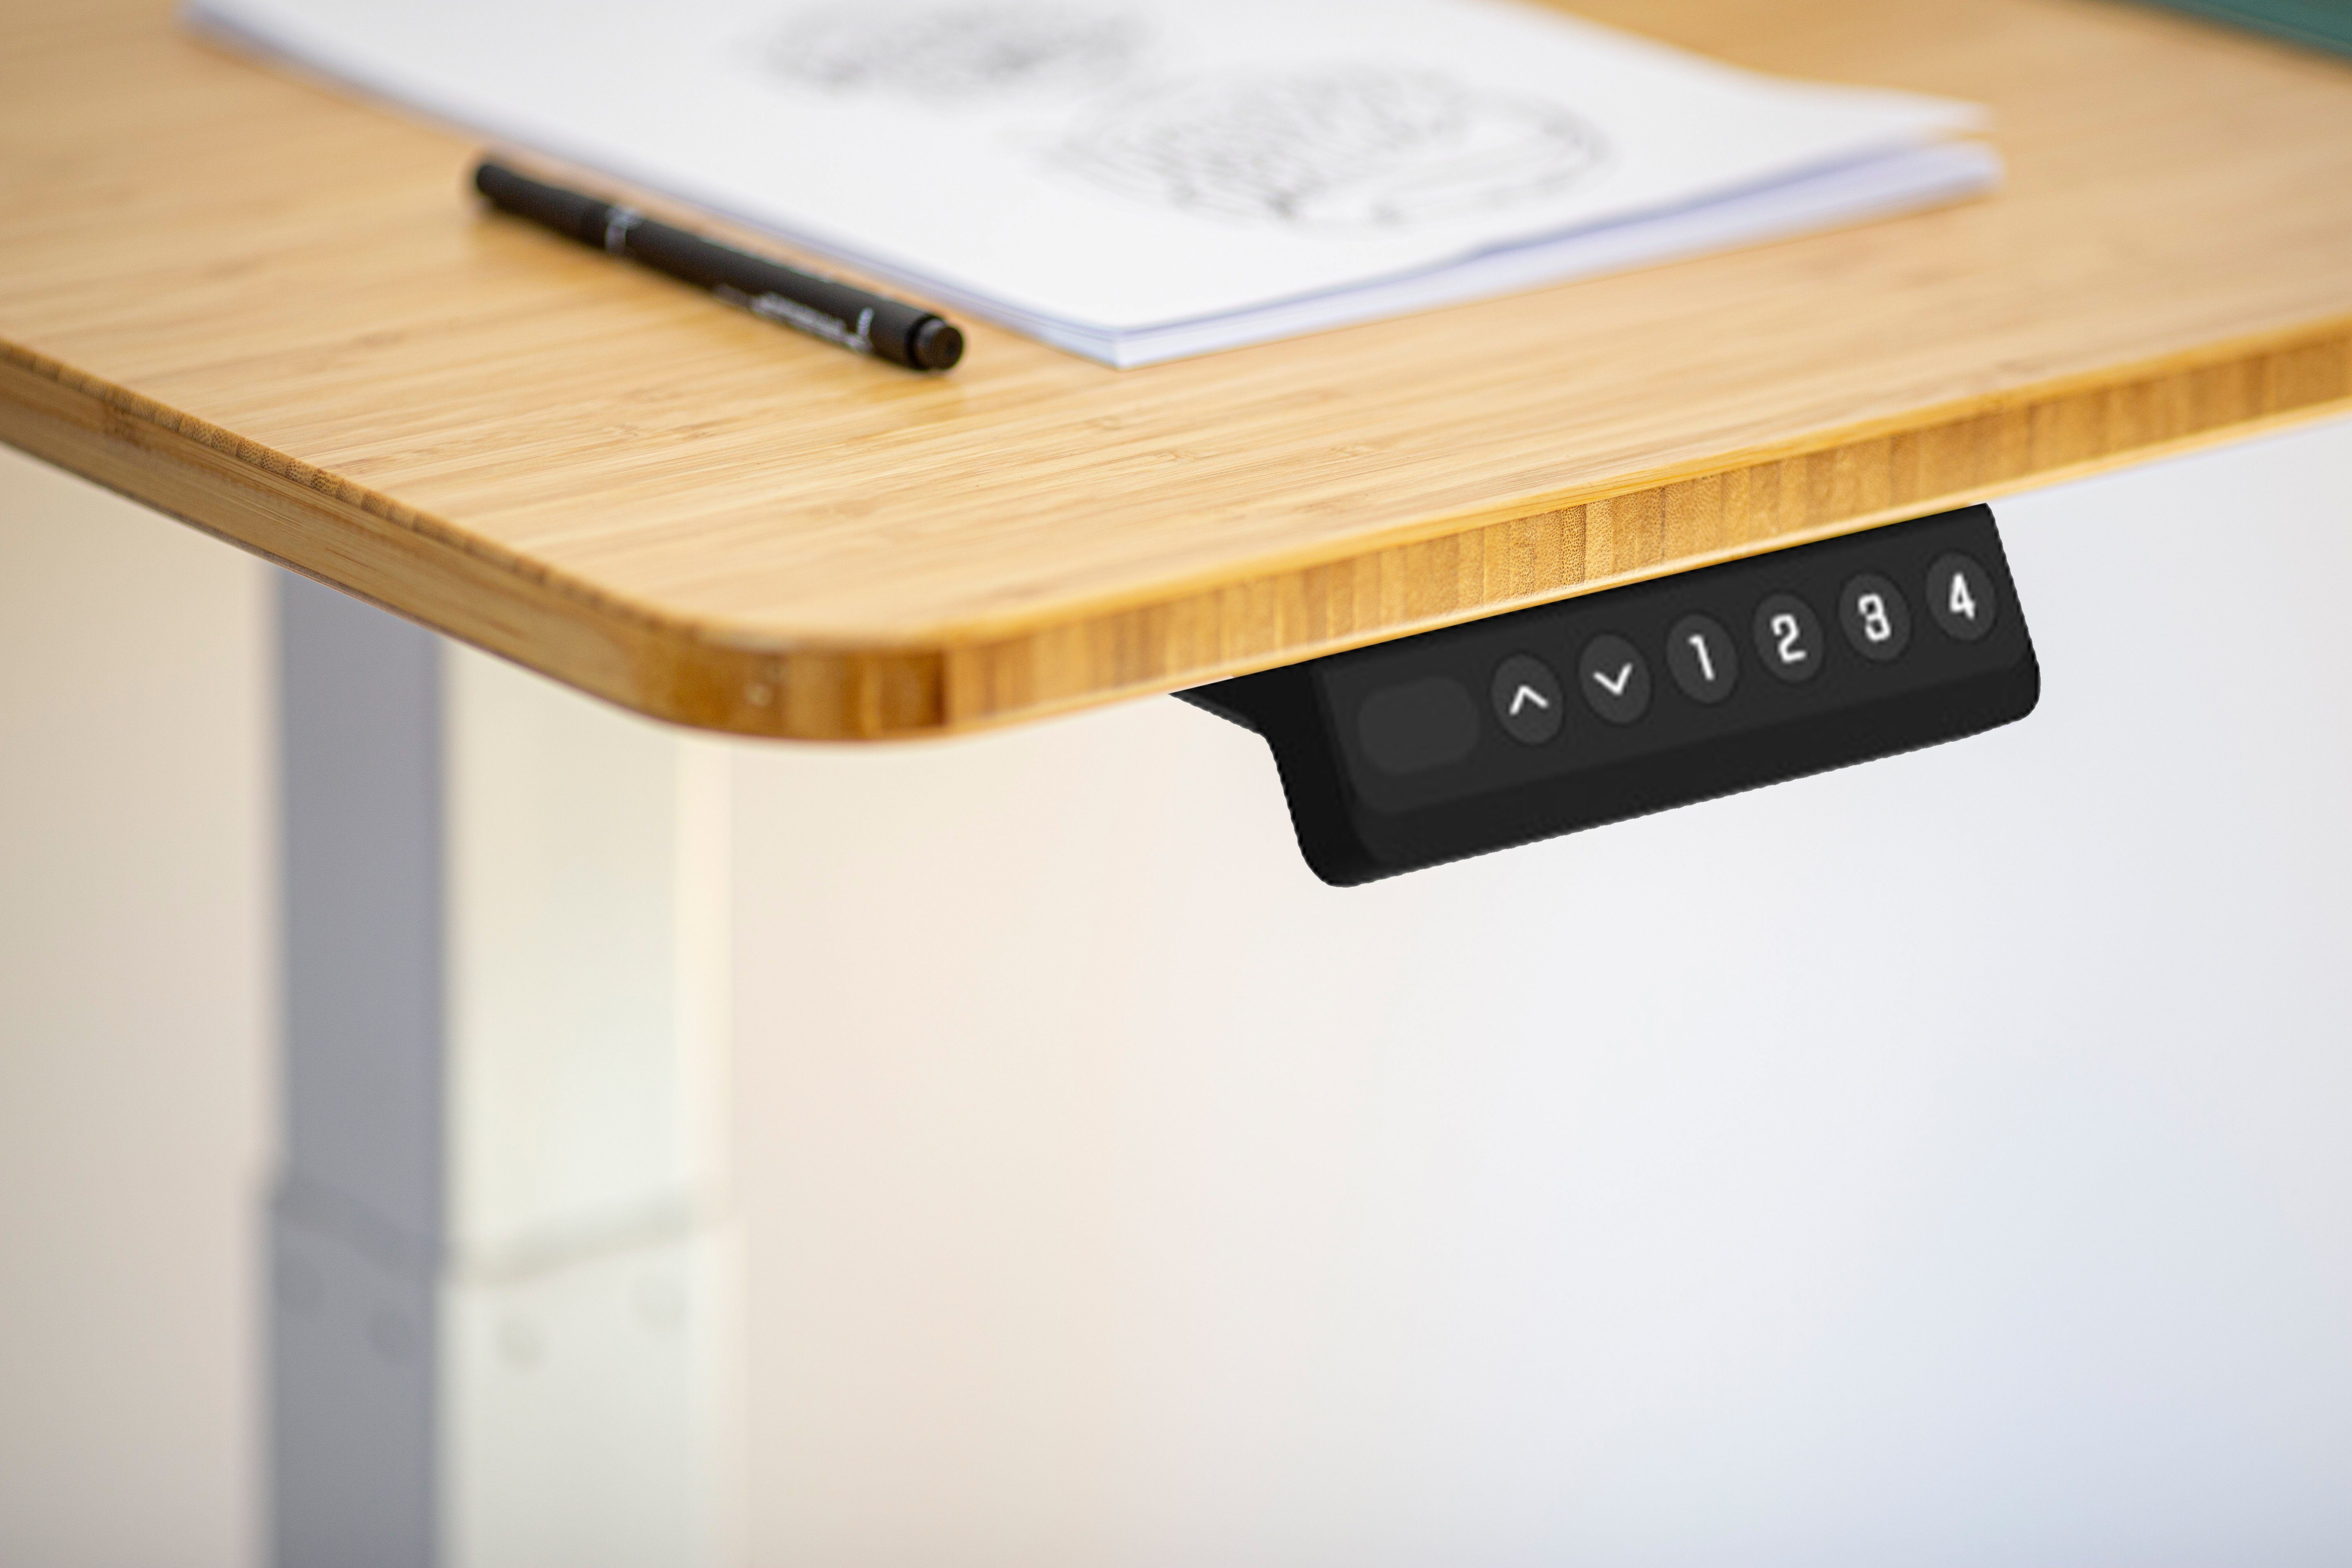 Schwarzes cm Tischplatte Walnuss Komplett-Set höhenverstellbarer Gestell elektrisch - Schreibtisch AGIl - 120*60 Schreibtisch